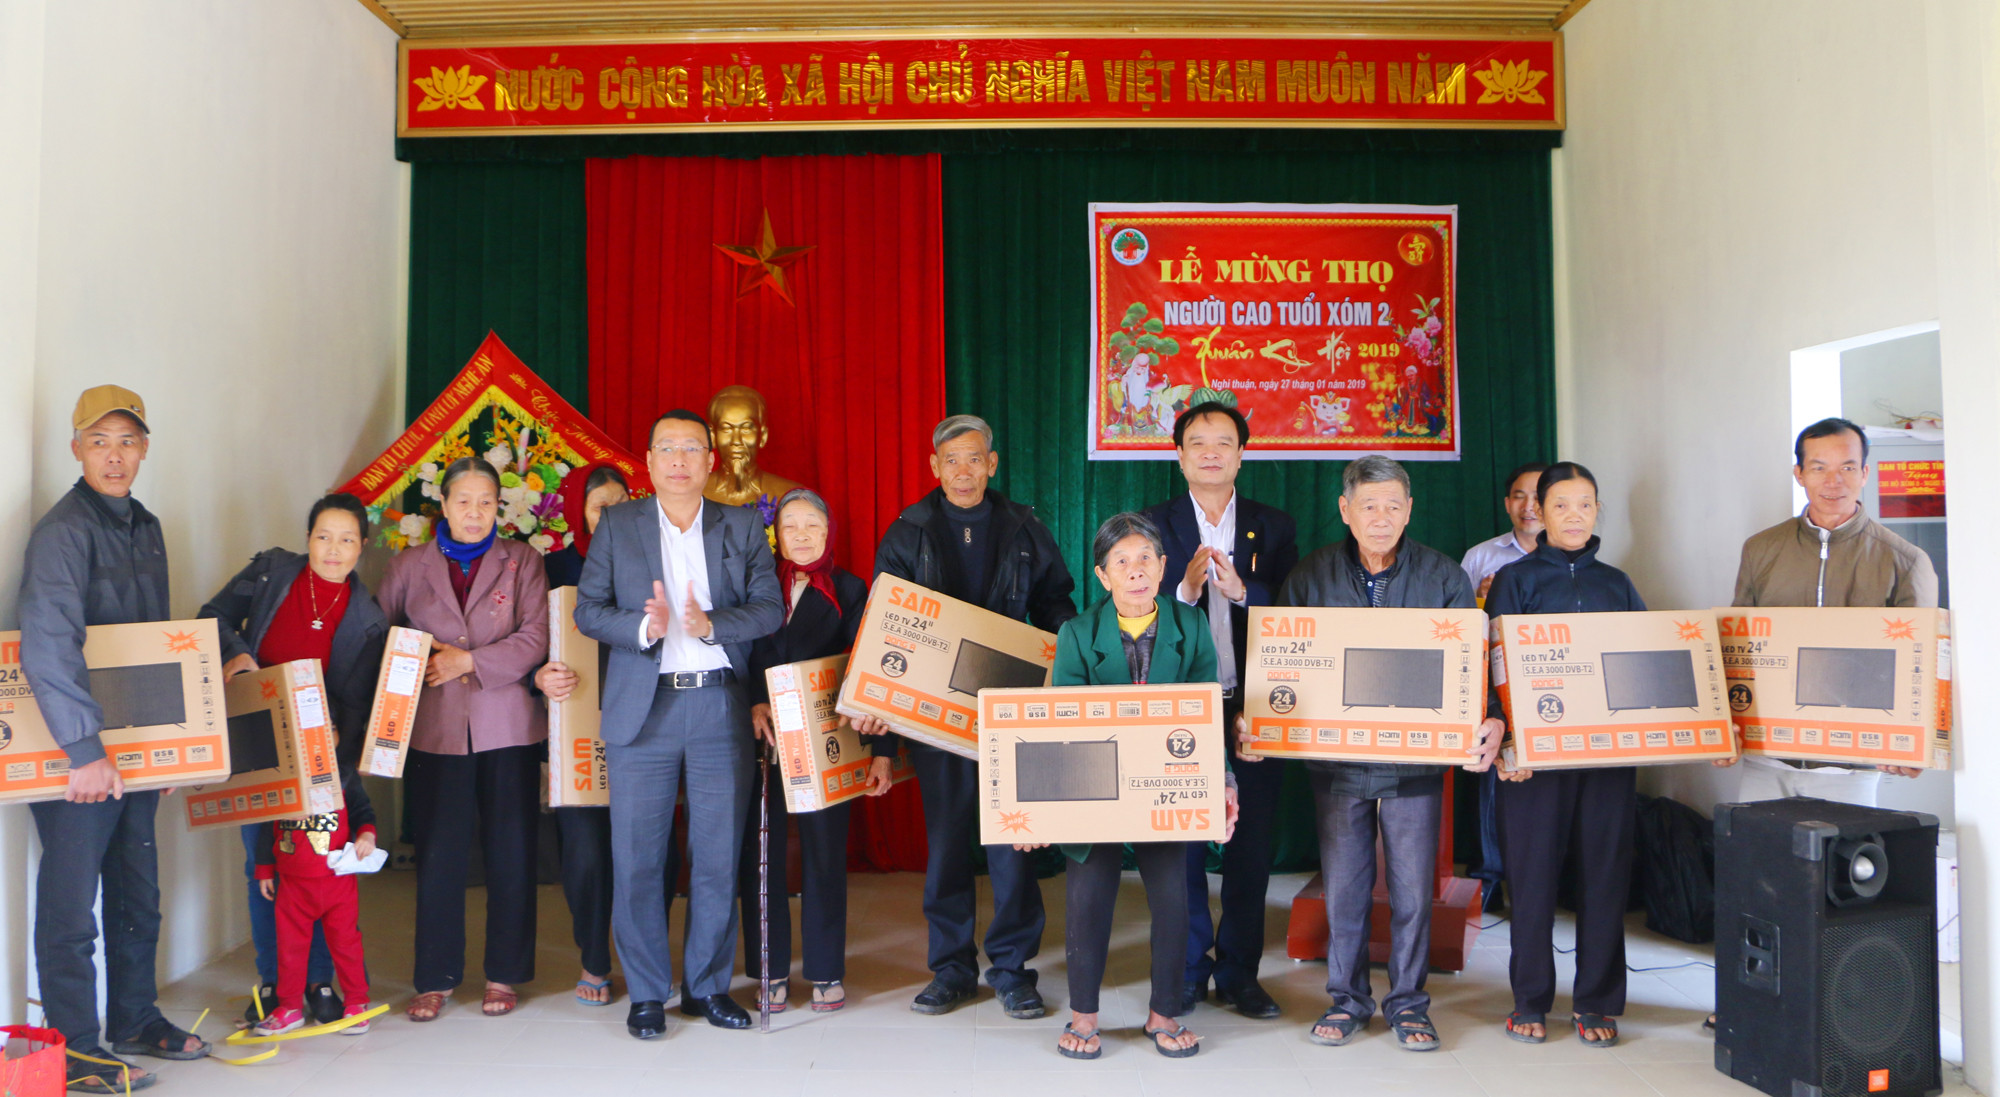 Đồng chí Hồ Phúc Hợp - Trưởng Ban Tổ chức Tỉnh ủy trao 10 chiếc Ti vi cho 10 hộ giáo dân nghèo xóm 2, xã Nghi Thuận. Ảnh: Nguyễn Hải